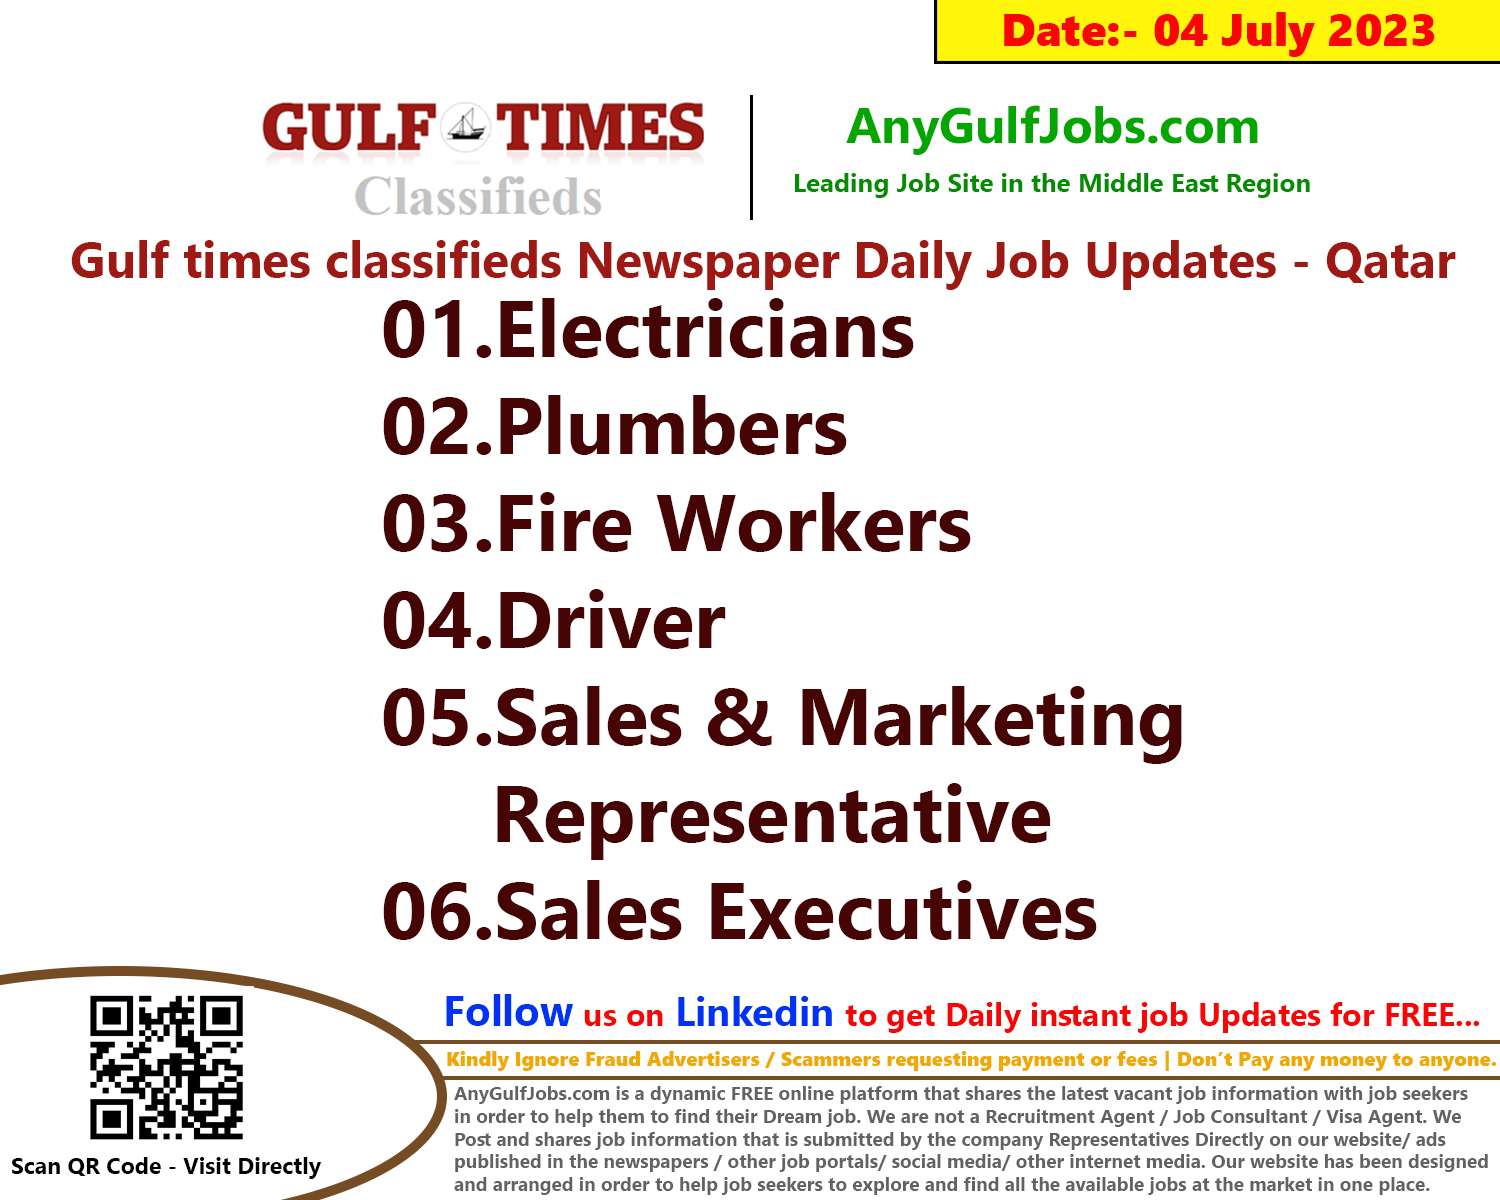 Gulf times classifieds Job Vacancies Qatar - 04 July 2023